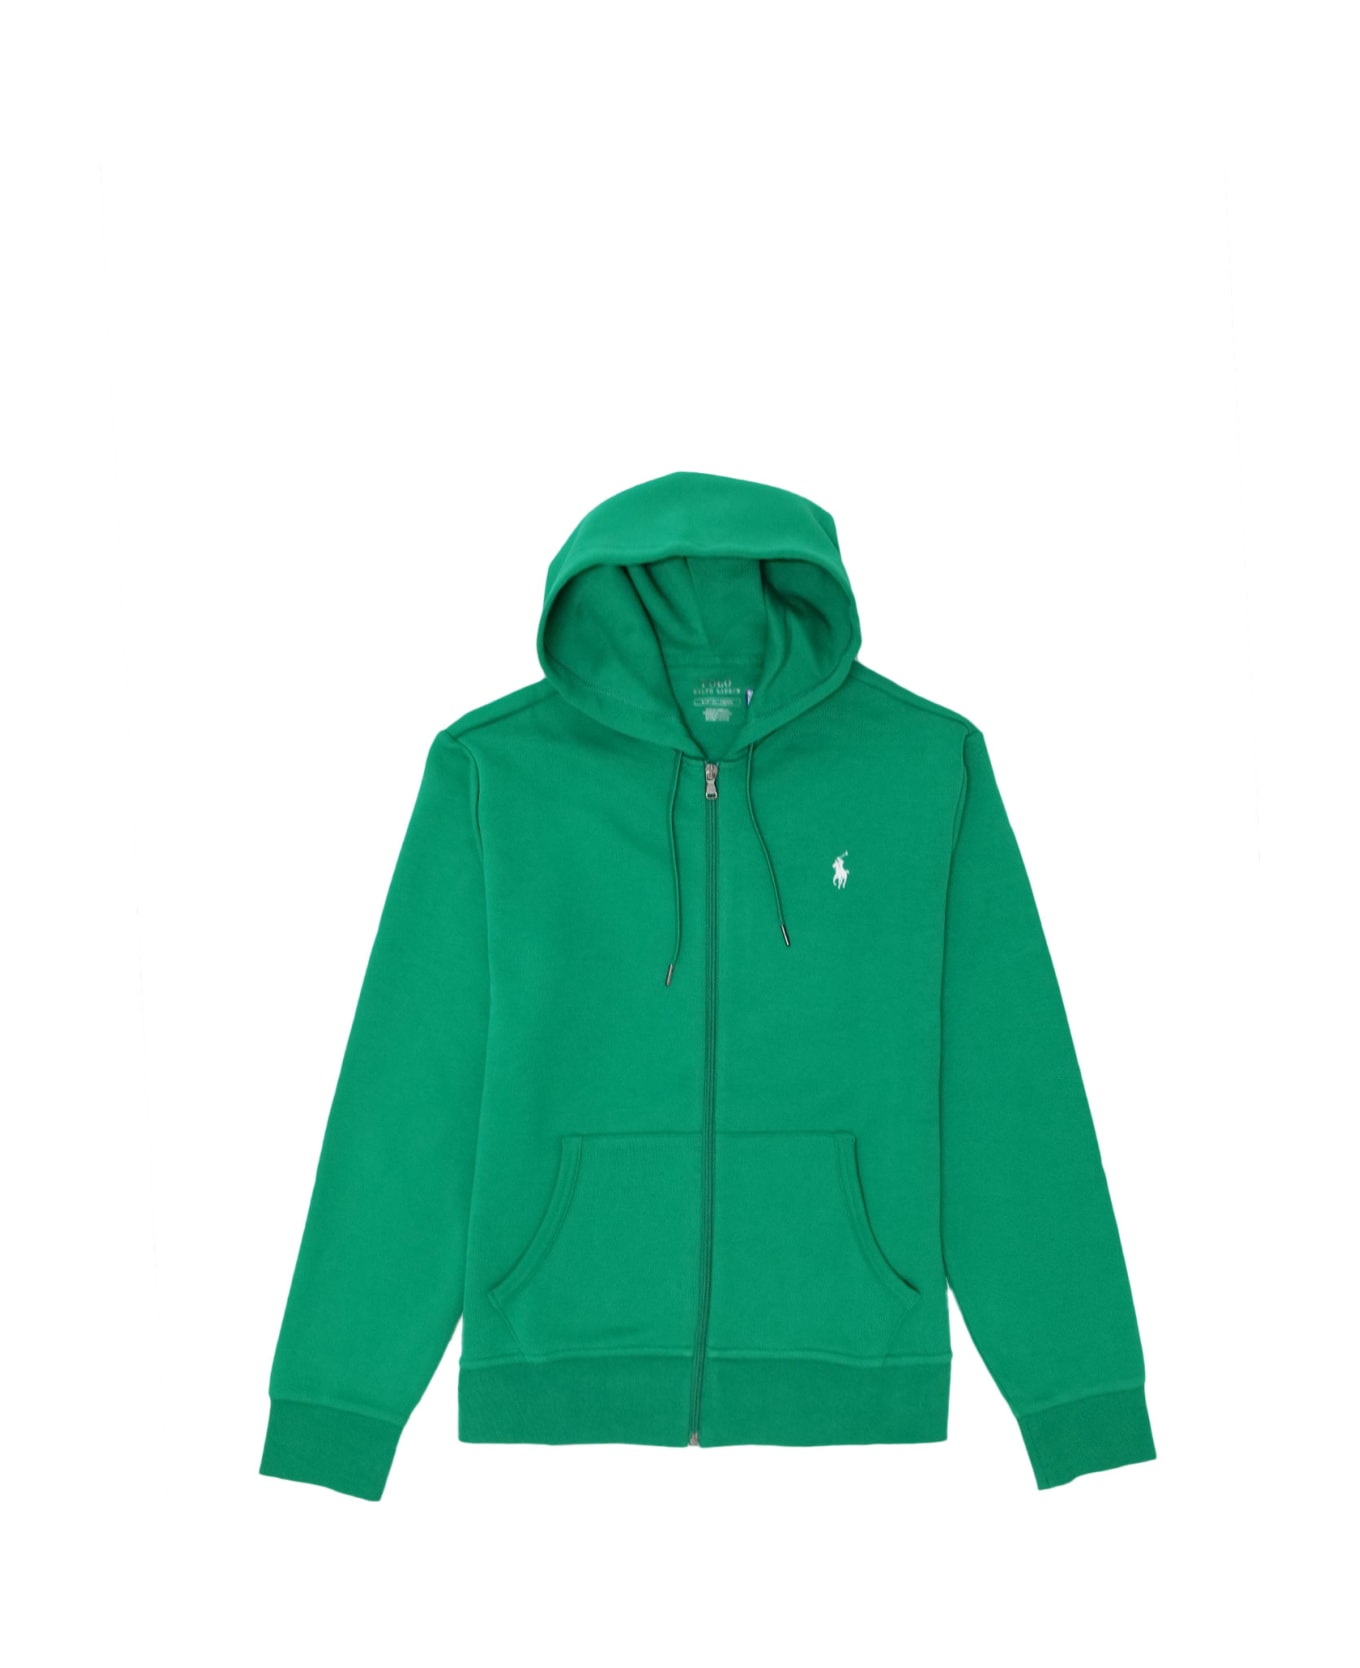 Polo Ralph Lauren Sweatshirt - Green